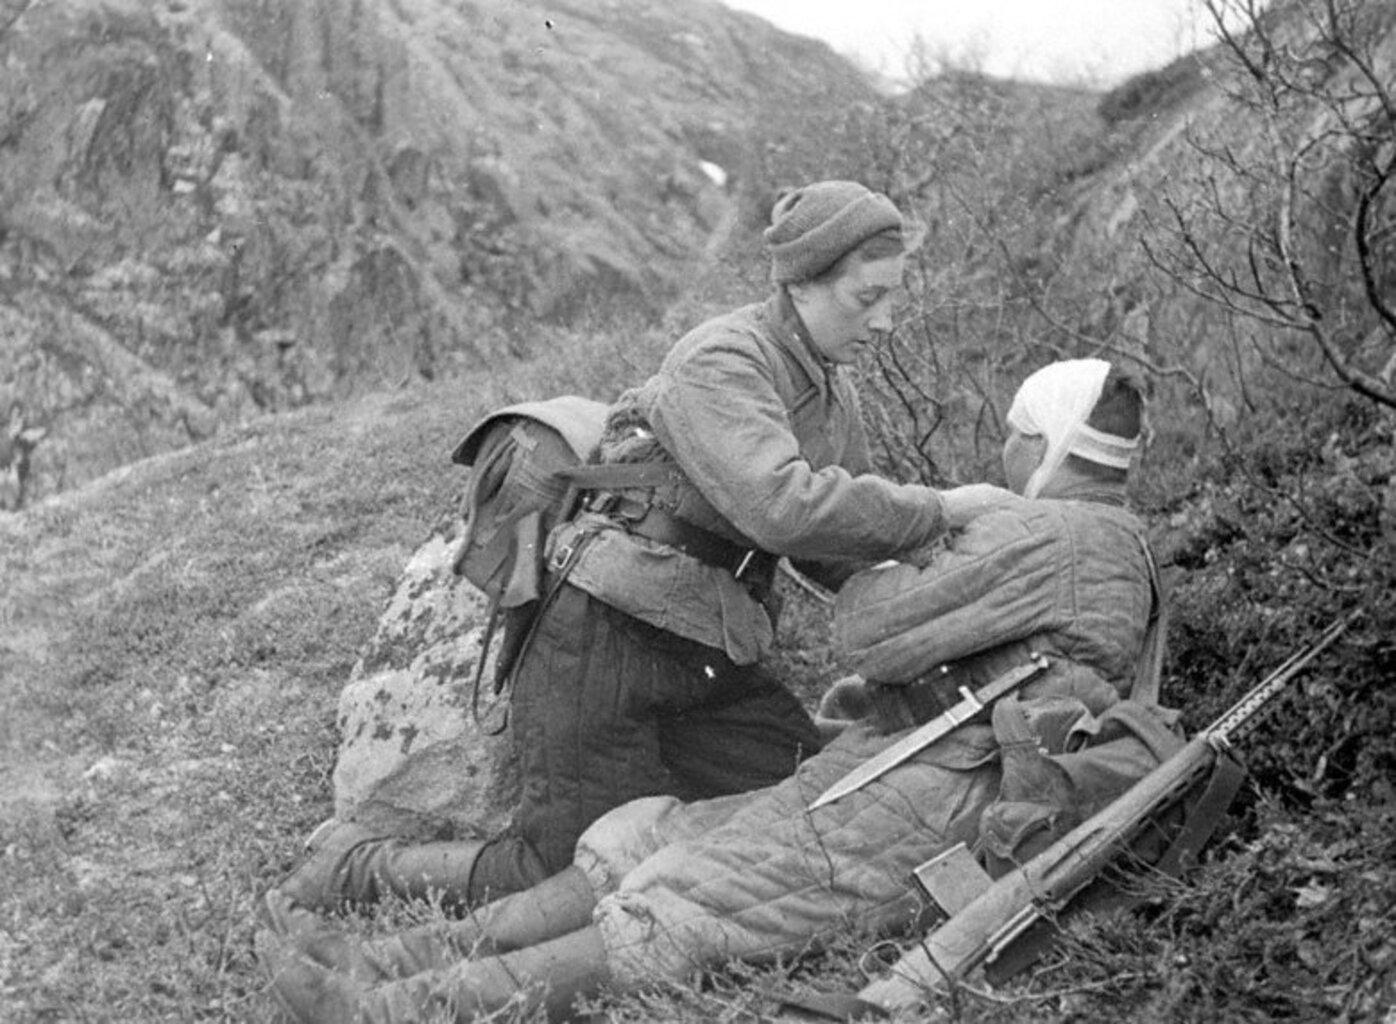 Сандружинница Н. Зорина перевязывает раненого бойца, Северный фронт, 1942 год